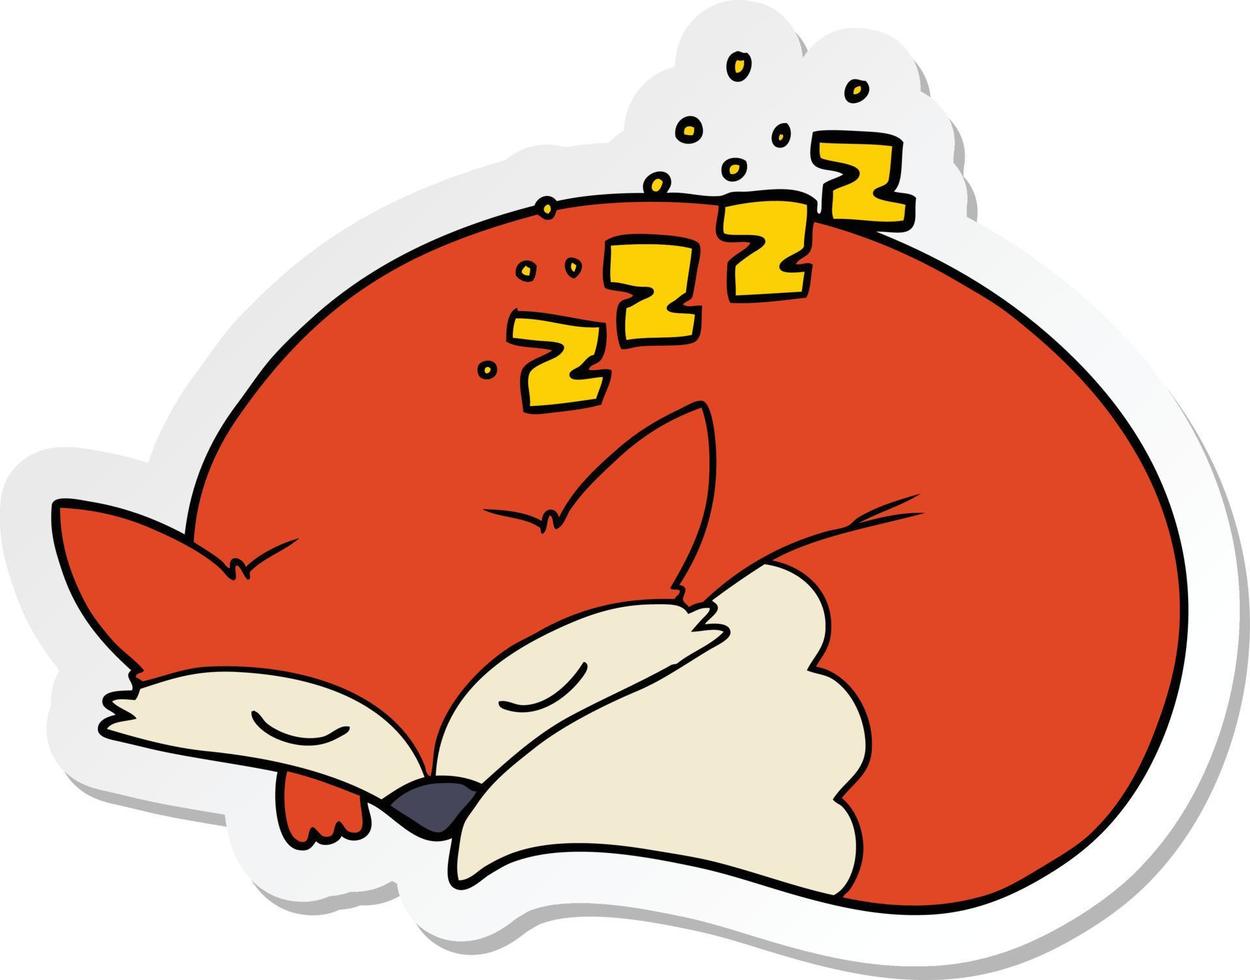 klistermärke av en tecknad sovande räv vektor